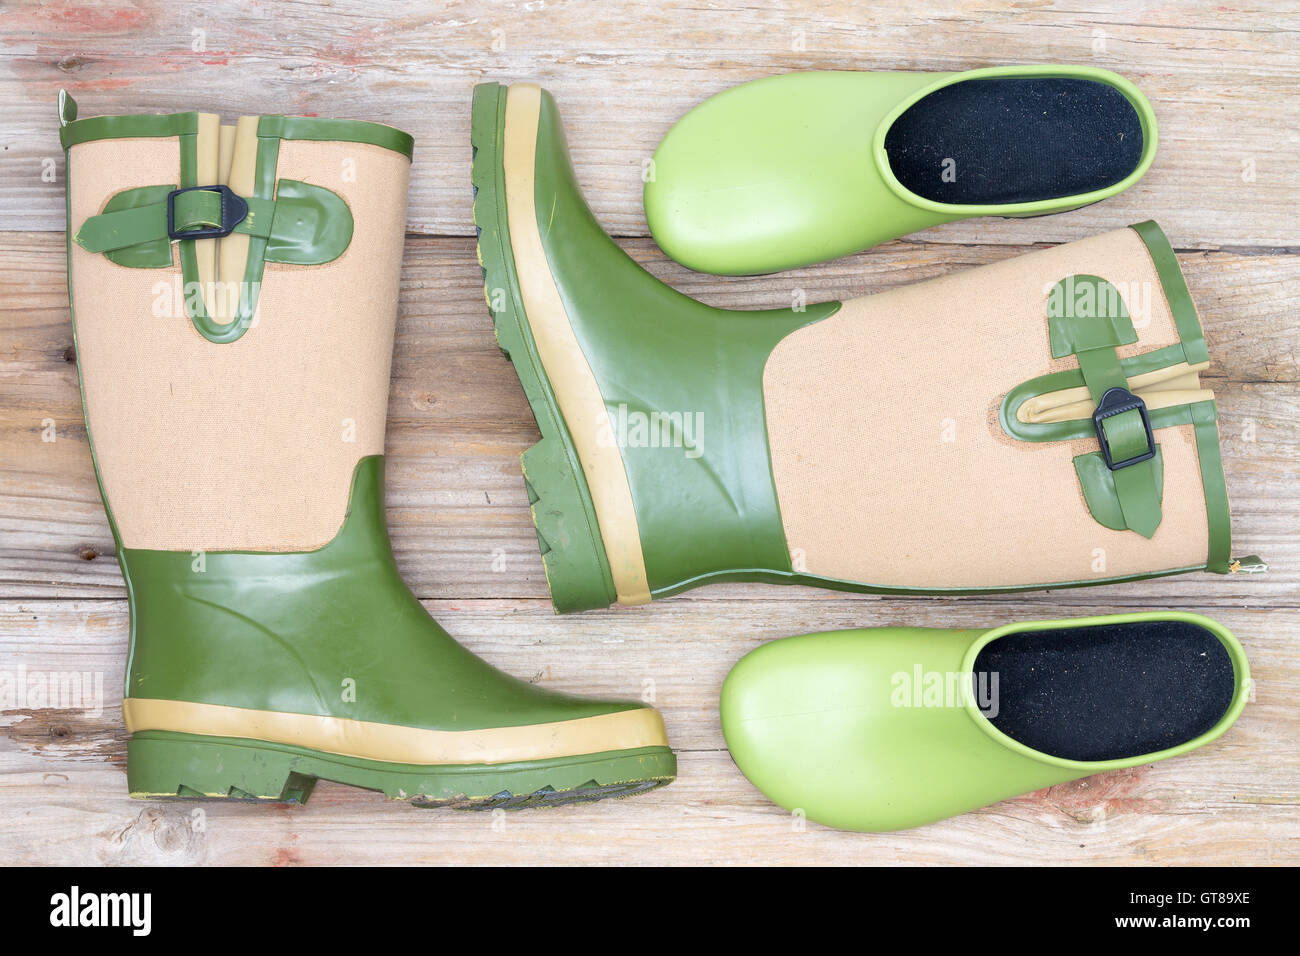 Stilvolle Schuhe für einen modischen Gärtner mit Grün und Beige dekorativer  Gummistiefel und grünen Clogs auf rustikalen hölzernen Wildschwein liegend  Stockfotografie - Alamy